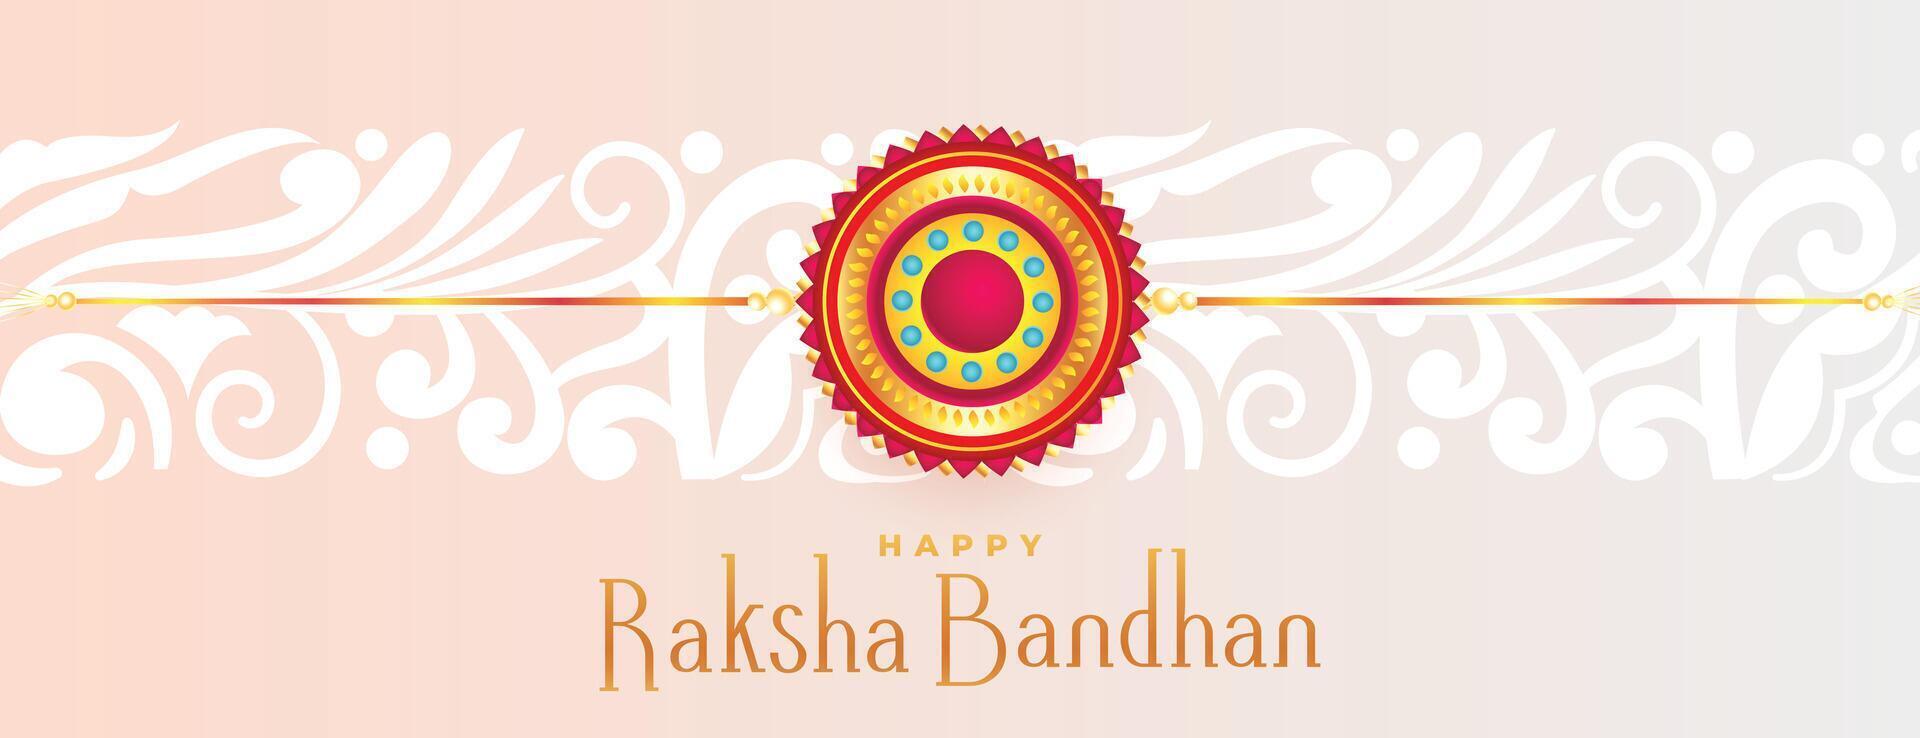 content raksha bandhan Festival vœux carte magnifique bannière vecteur